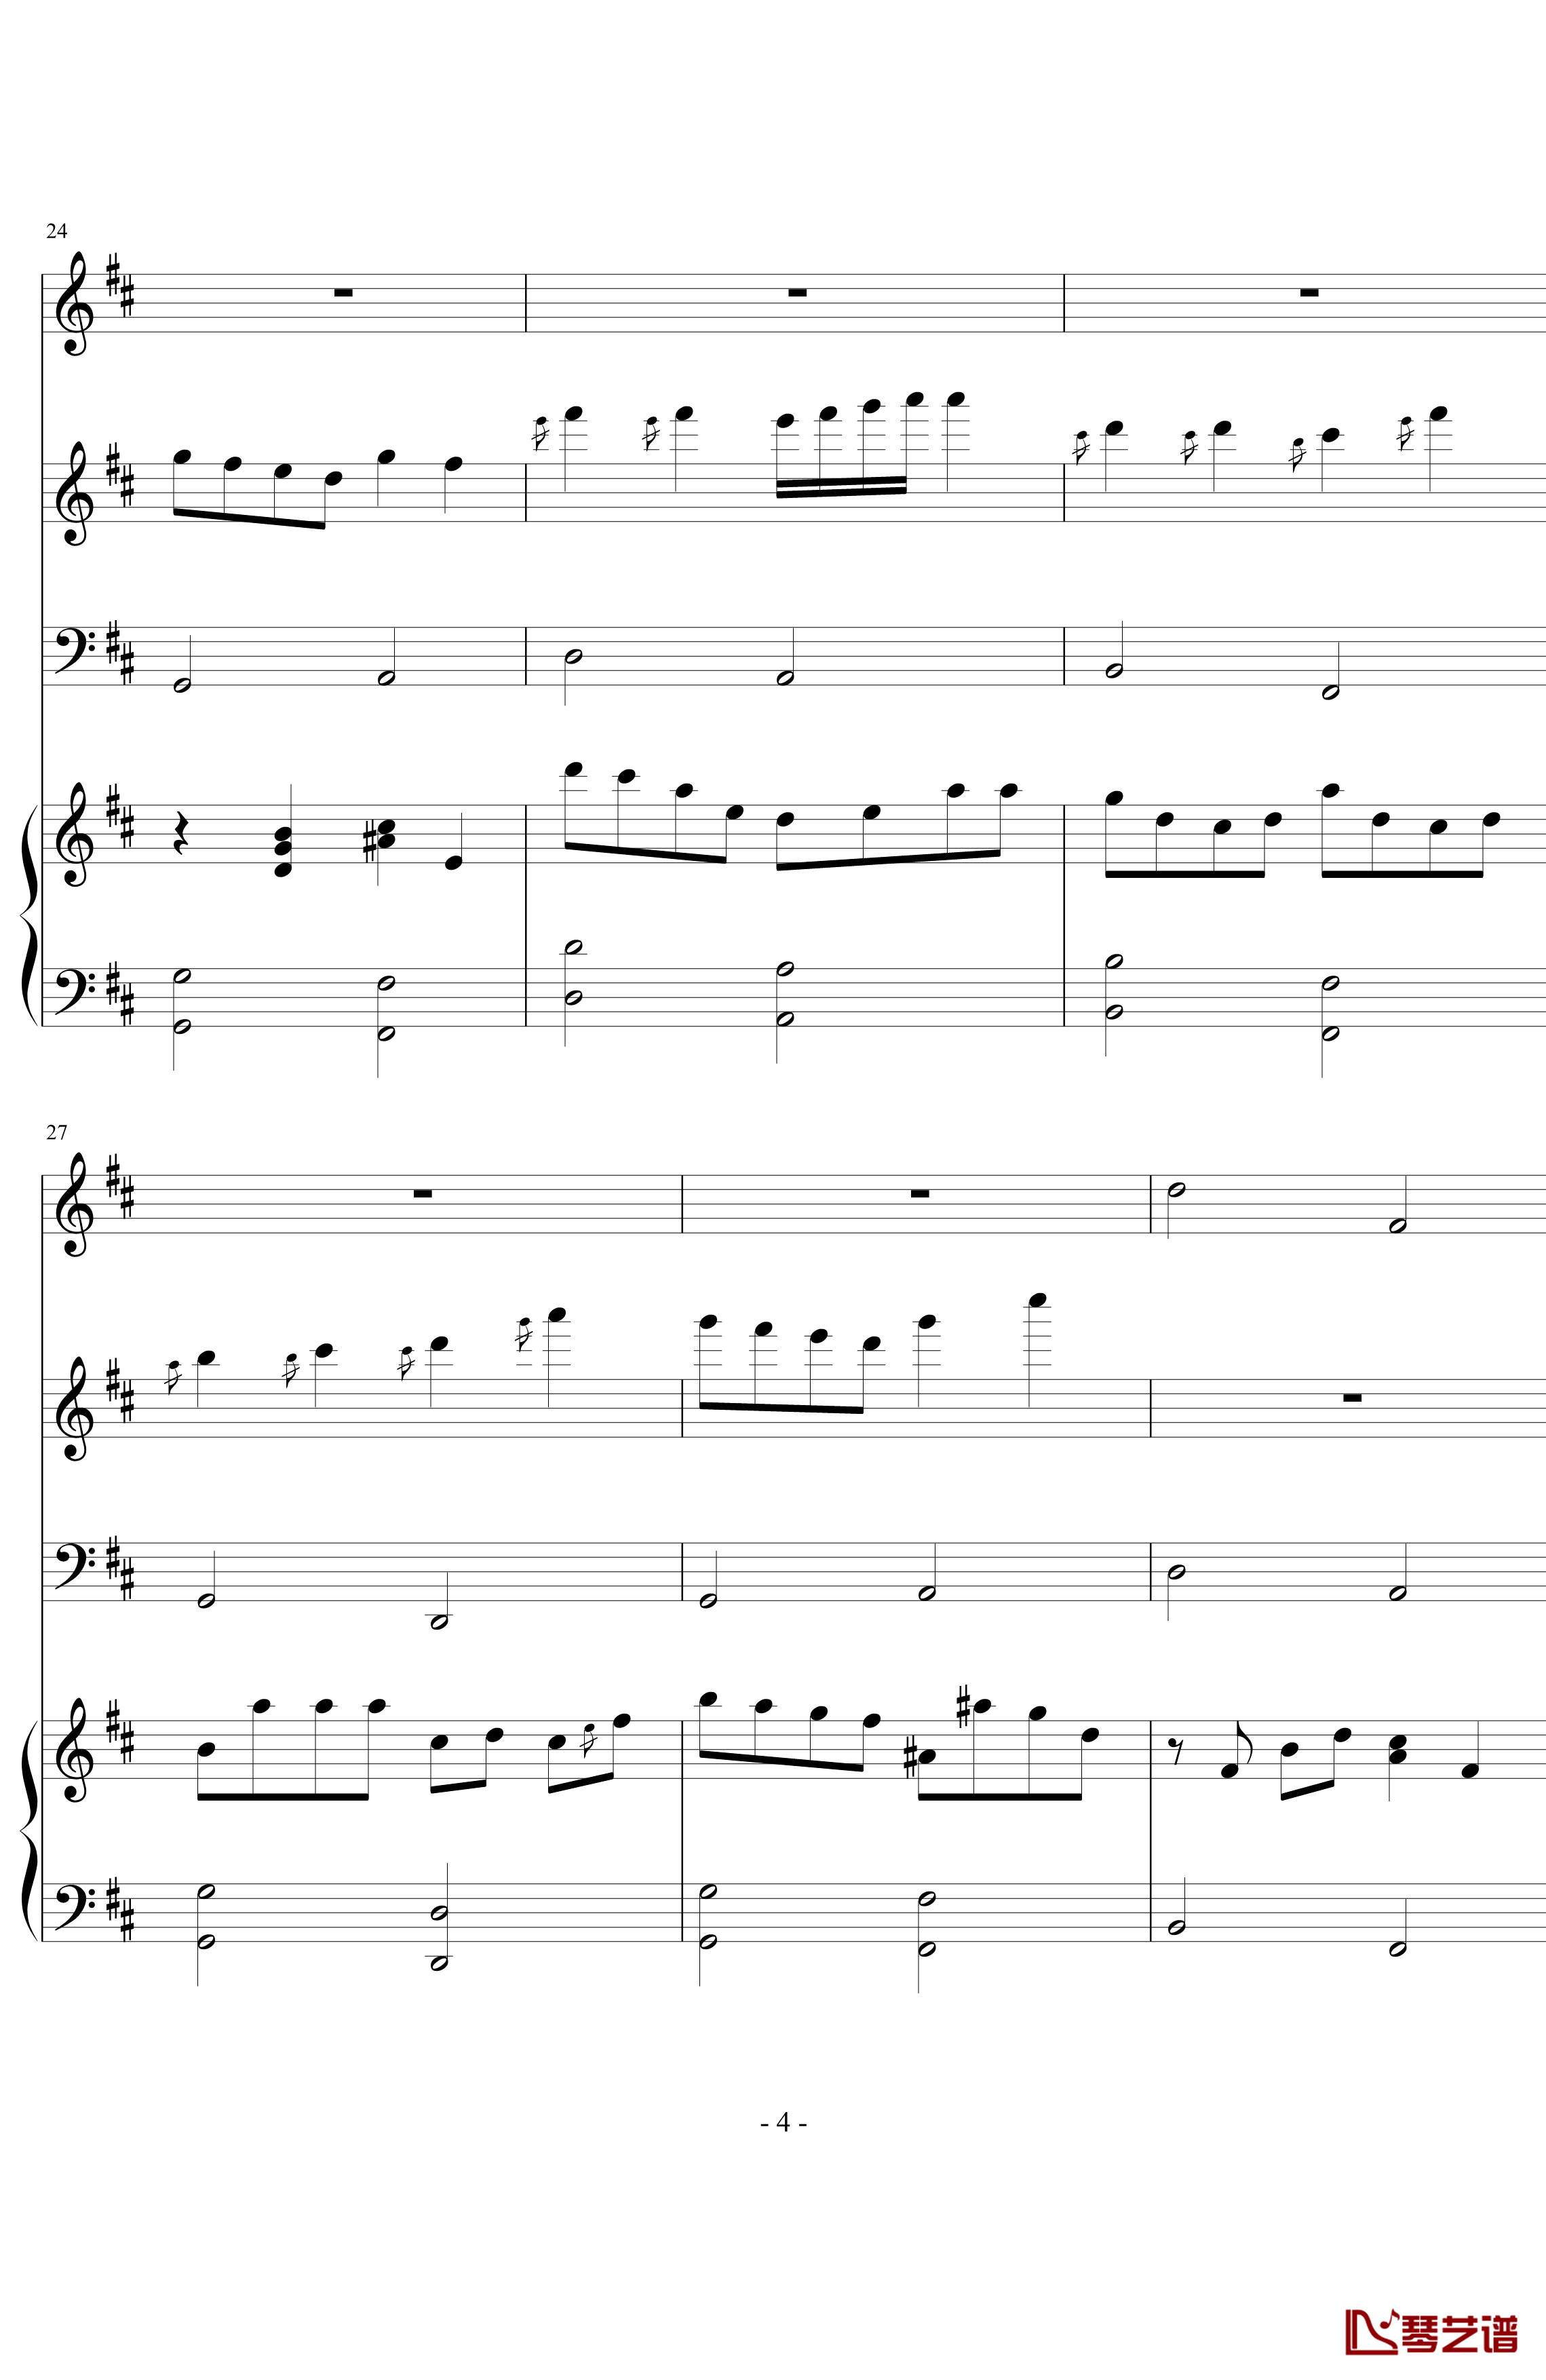 卡农森林版钢琴谱-帕赫贝尔-Pachelbel4